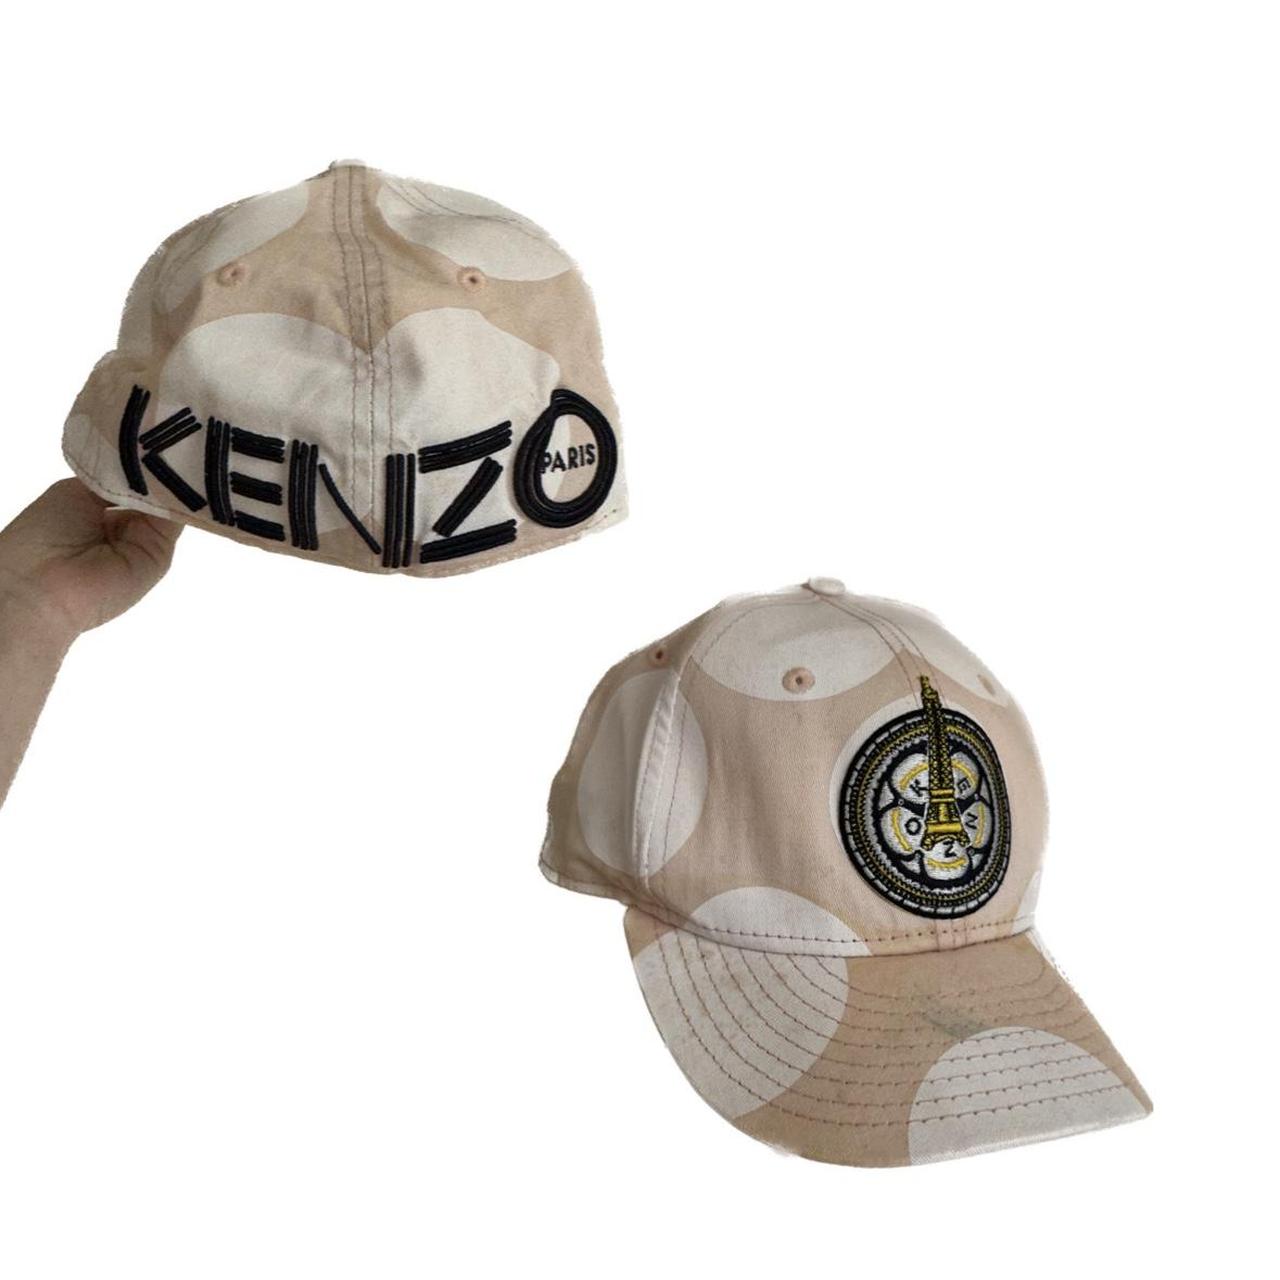 Kenzo hat - Depop